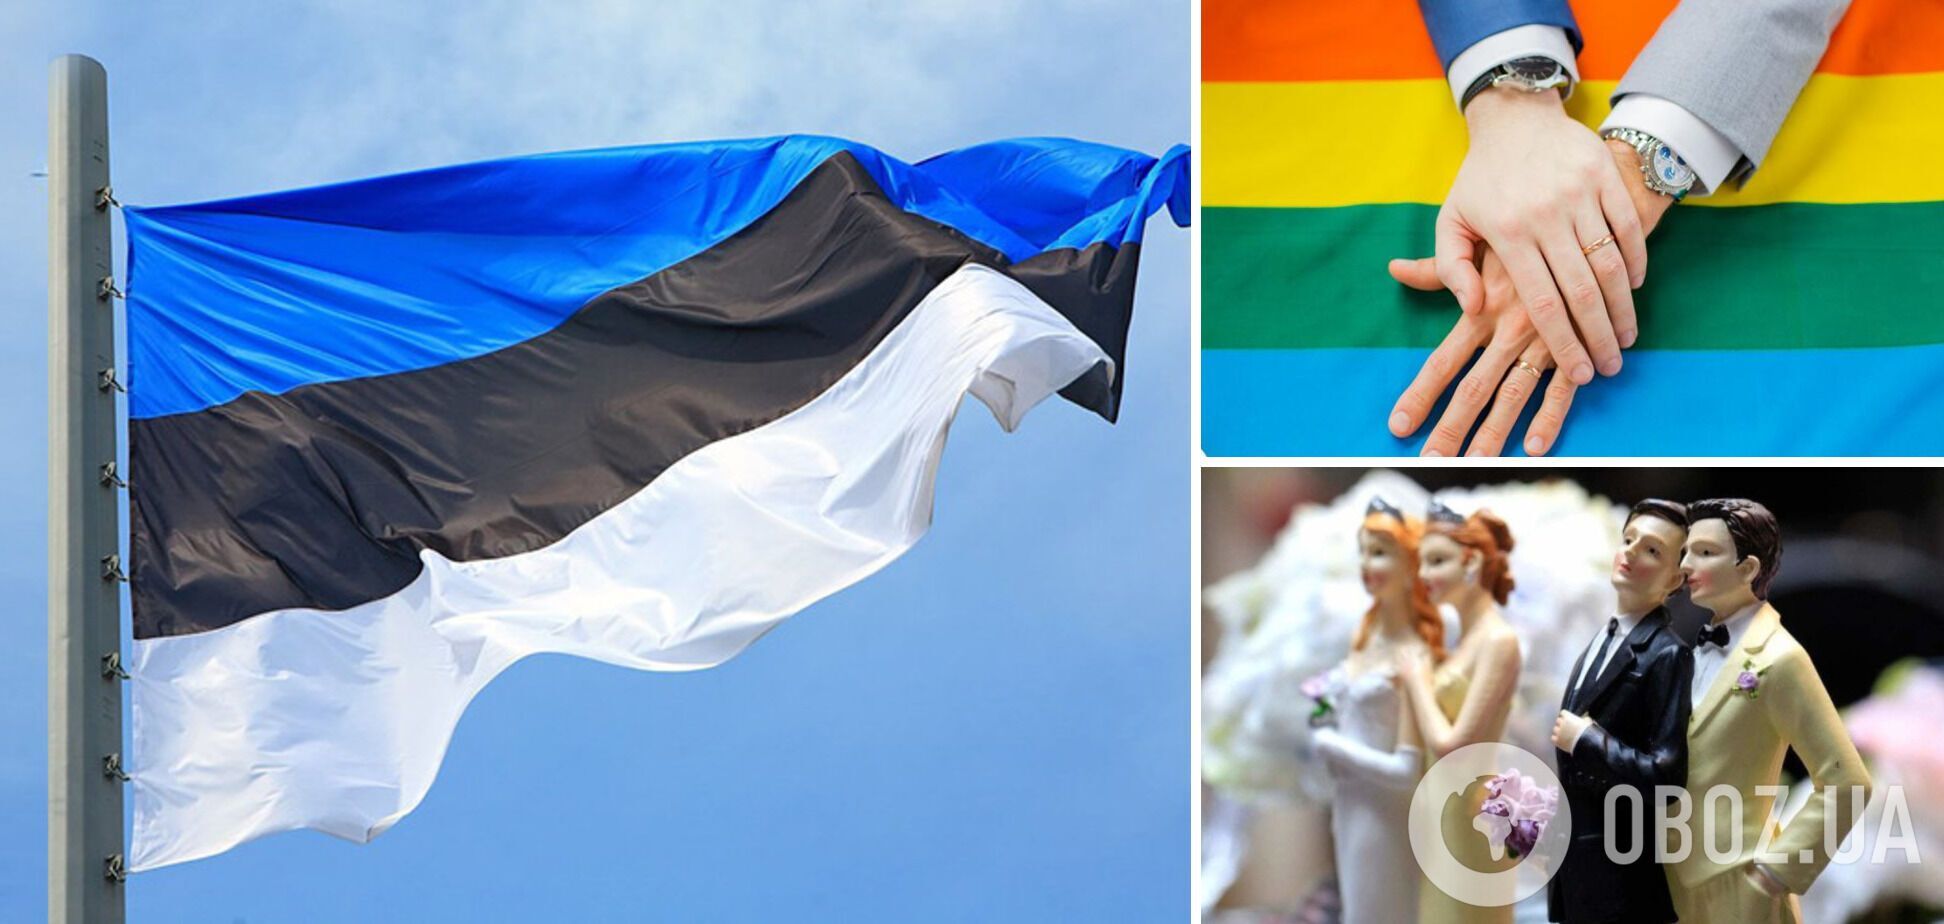 Эстония первой из стран Балтии узаконила однополые браки и позволила парам усыновлять детей